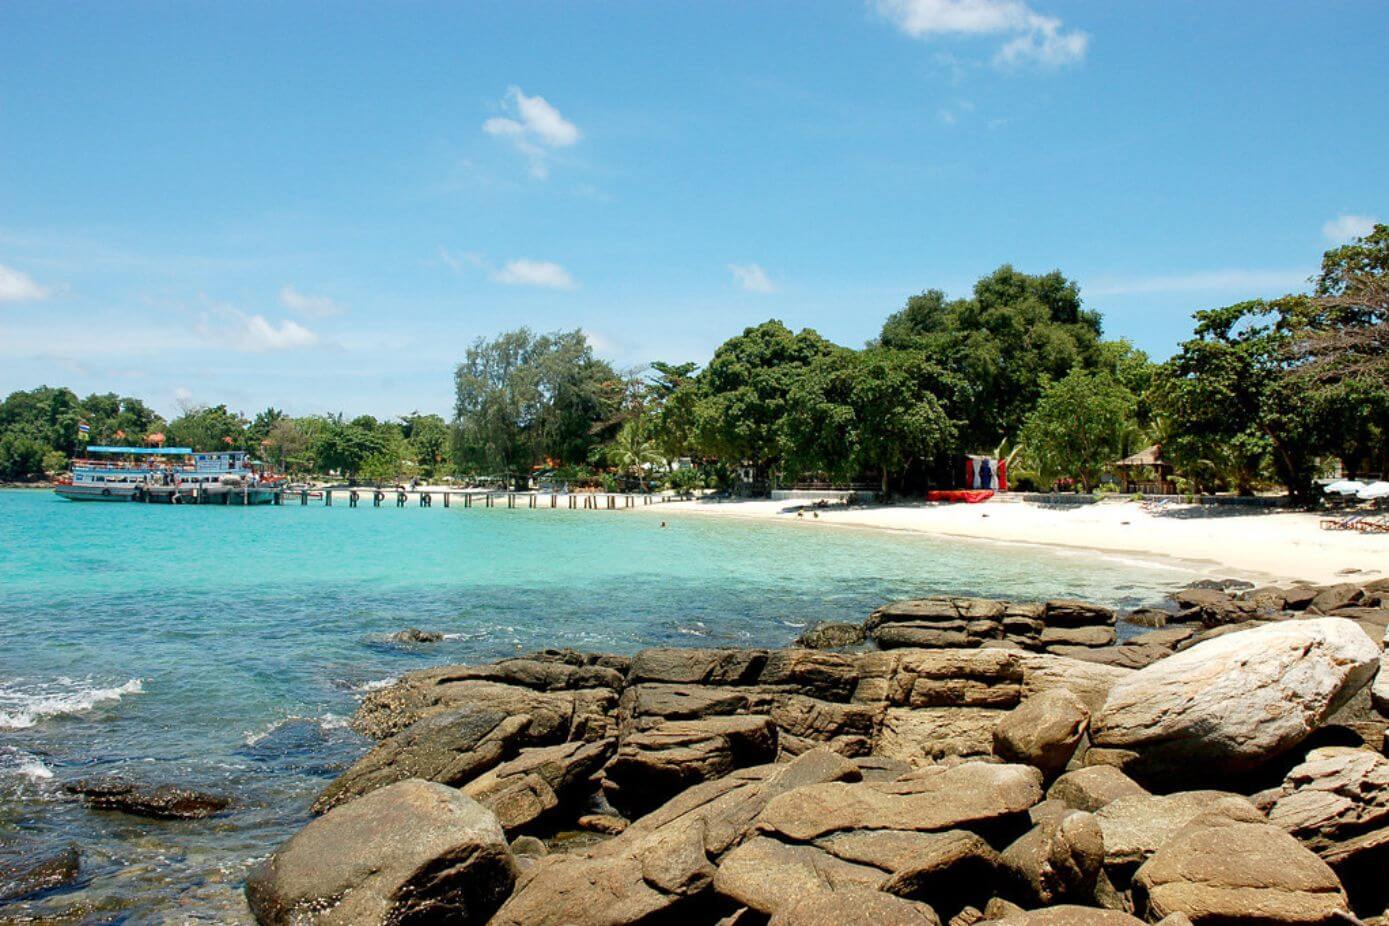 Best Thailand beaches - Koh Samet